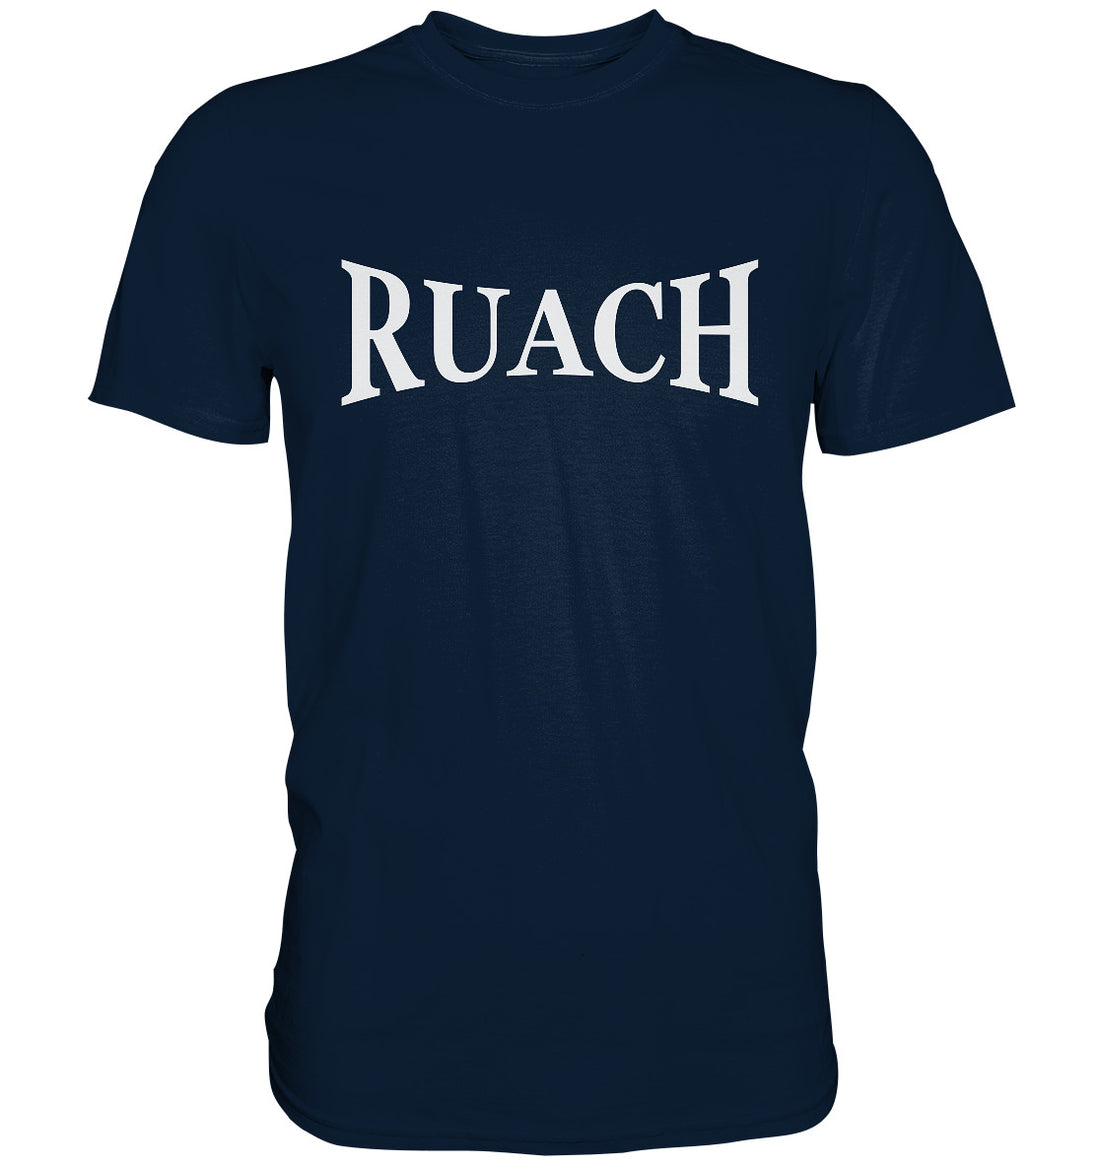 Ruach - Premium Shirt